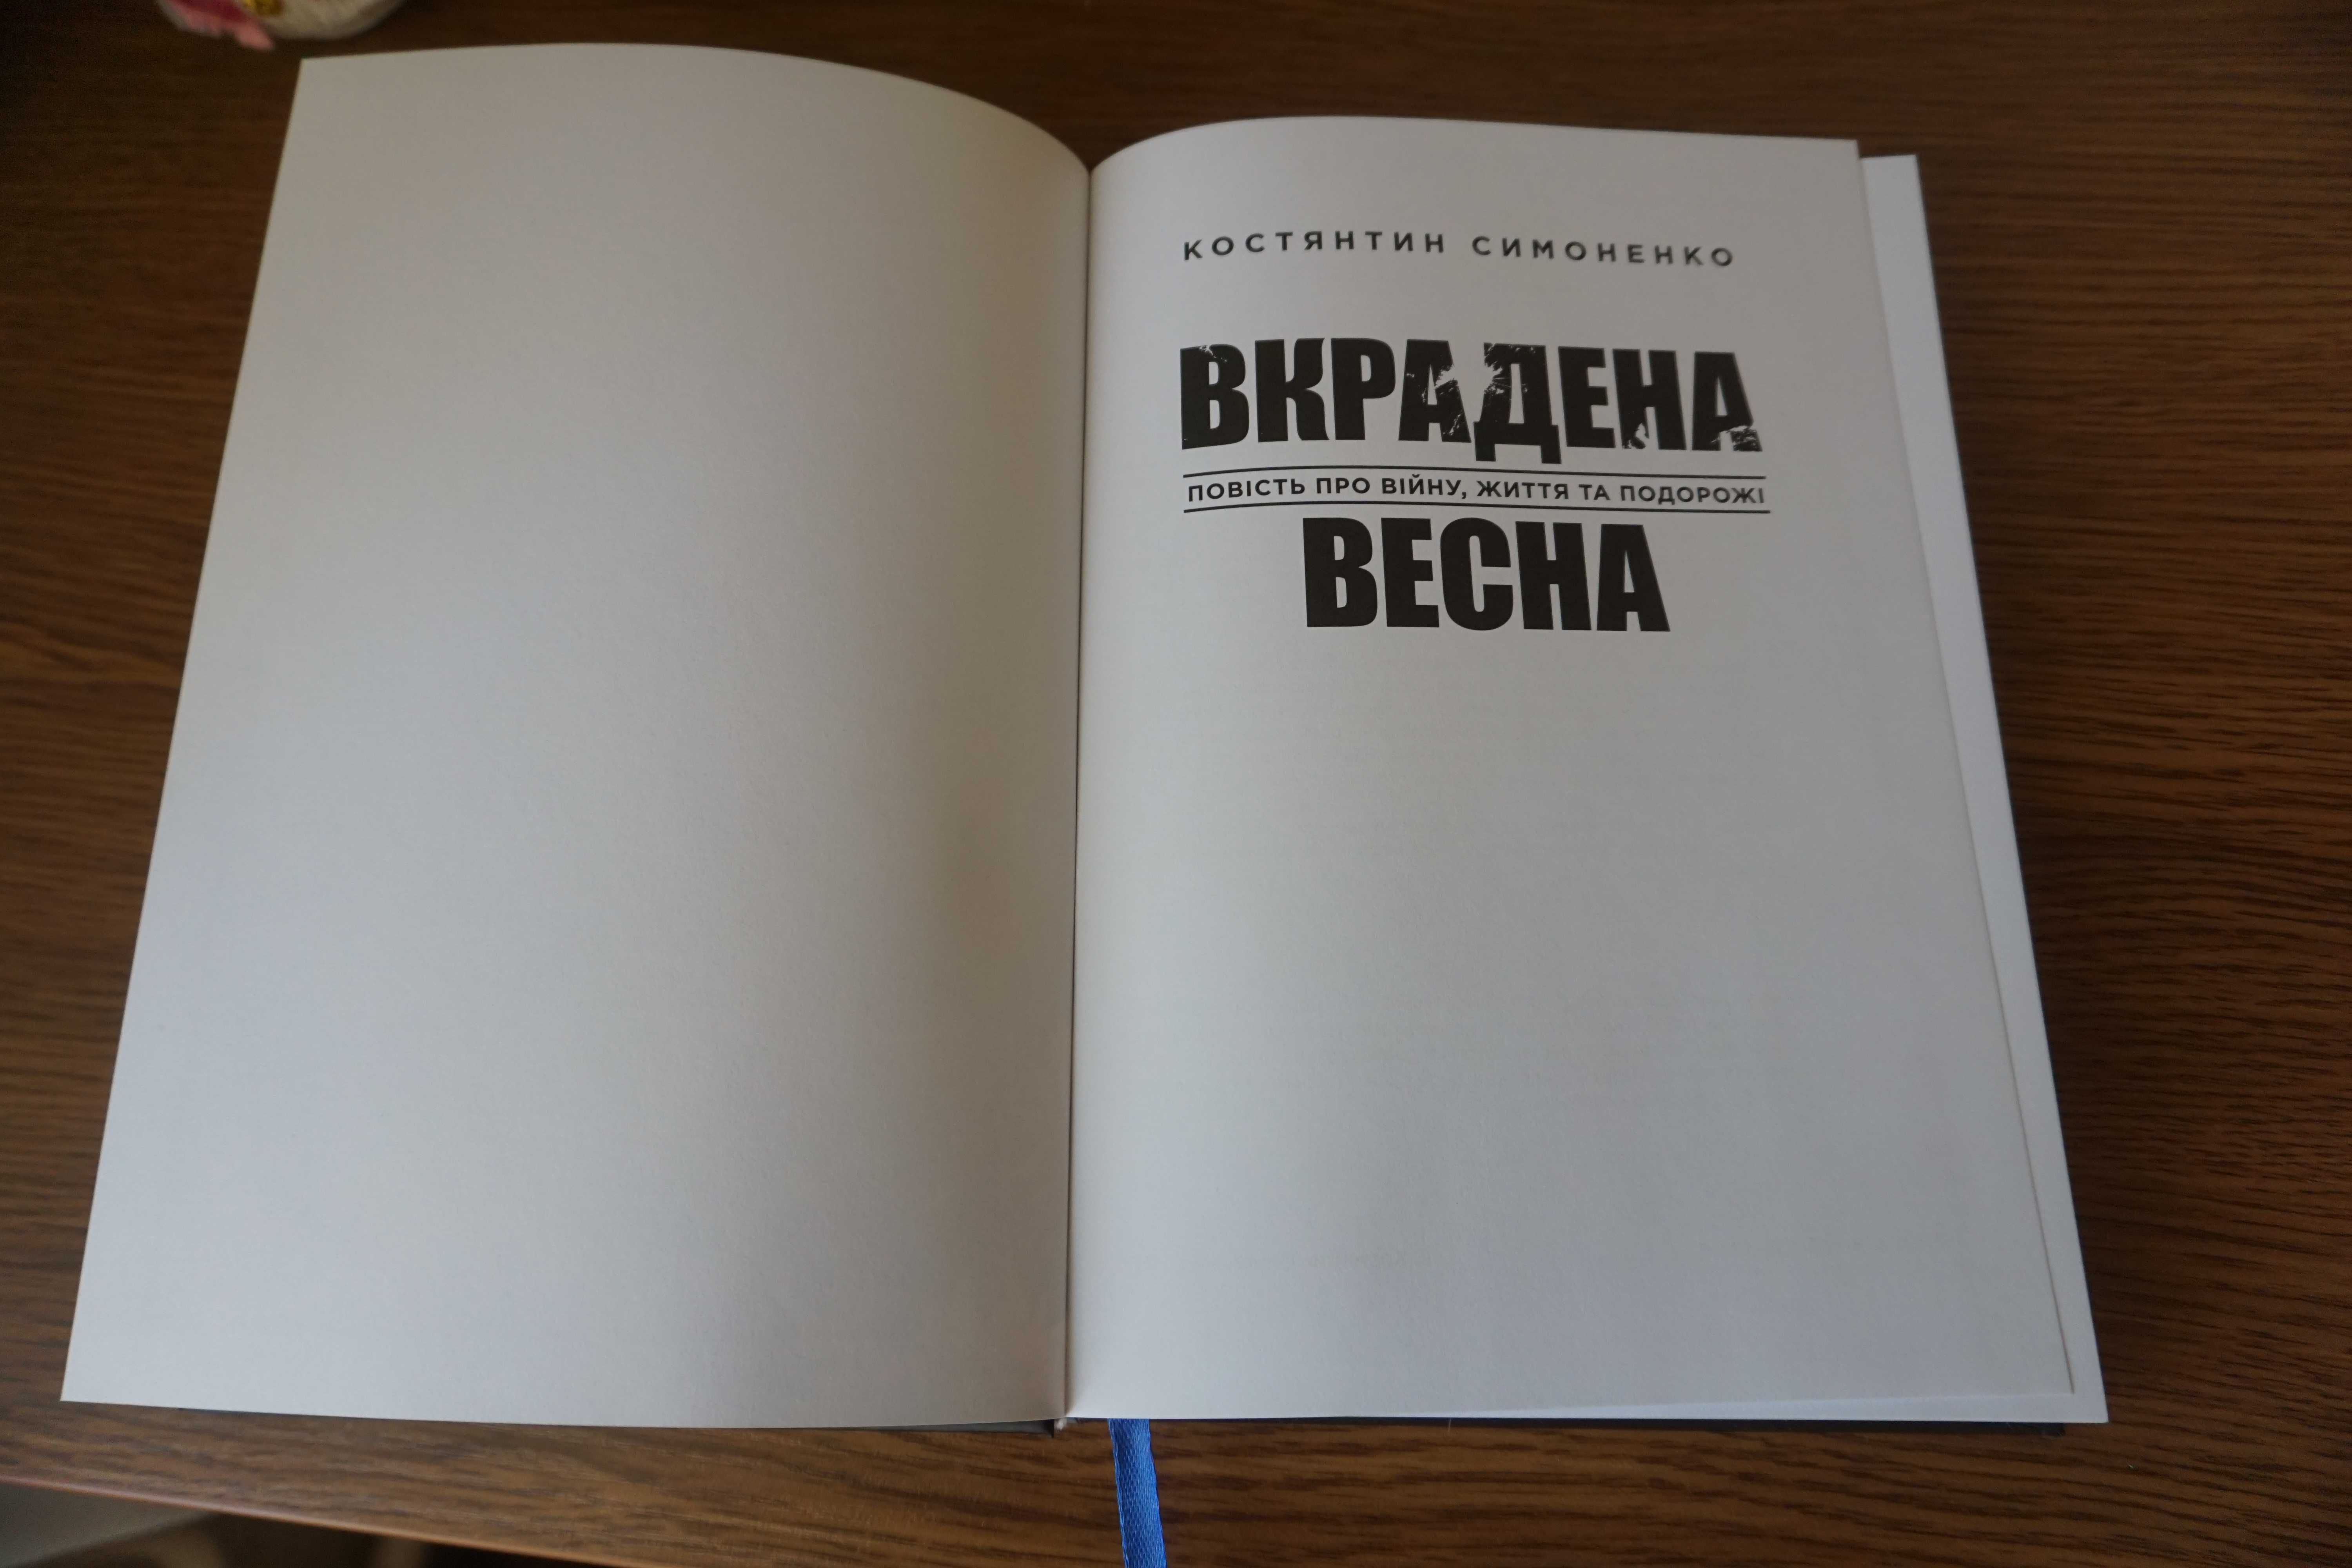 Книга Вкрадена весна, К.Симоненко, известный украинский путешественник